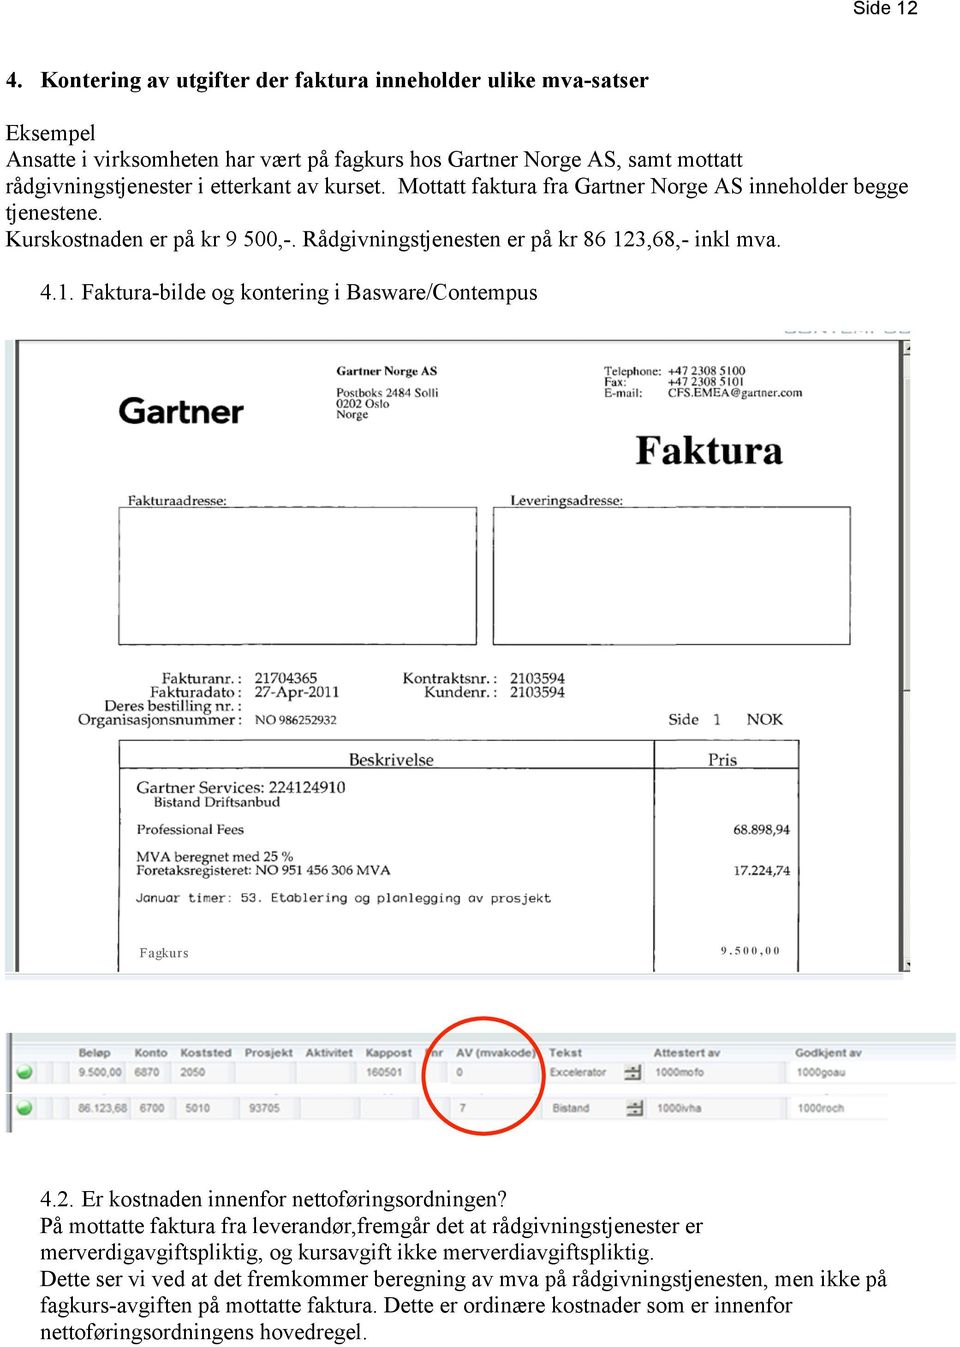 Mottatt faktura fra Gartner Norge AS inneholder begge tjenestene. Kurskostnaden er på kr 9 500,-. Rådgivningstjenesten er på kr 86 123,68,- inkl mva. 4.1. Faktura-bilde og kontering i Basware/Contempus Fagkur s 9.